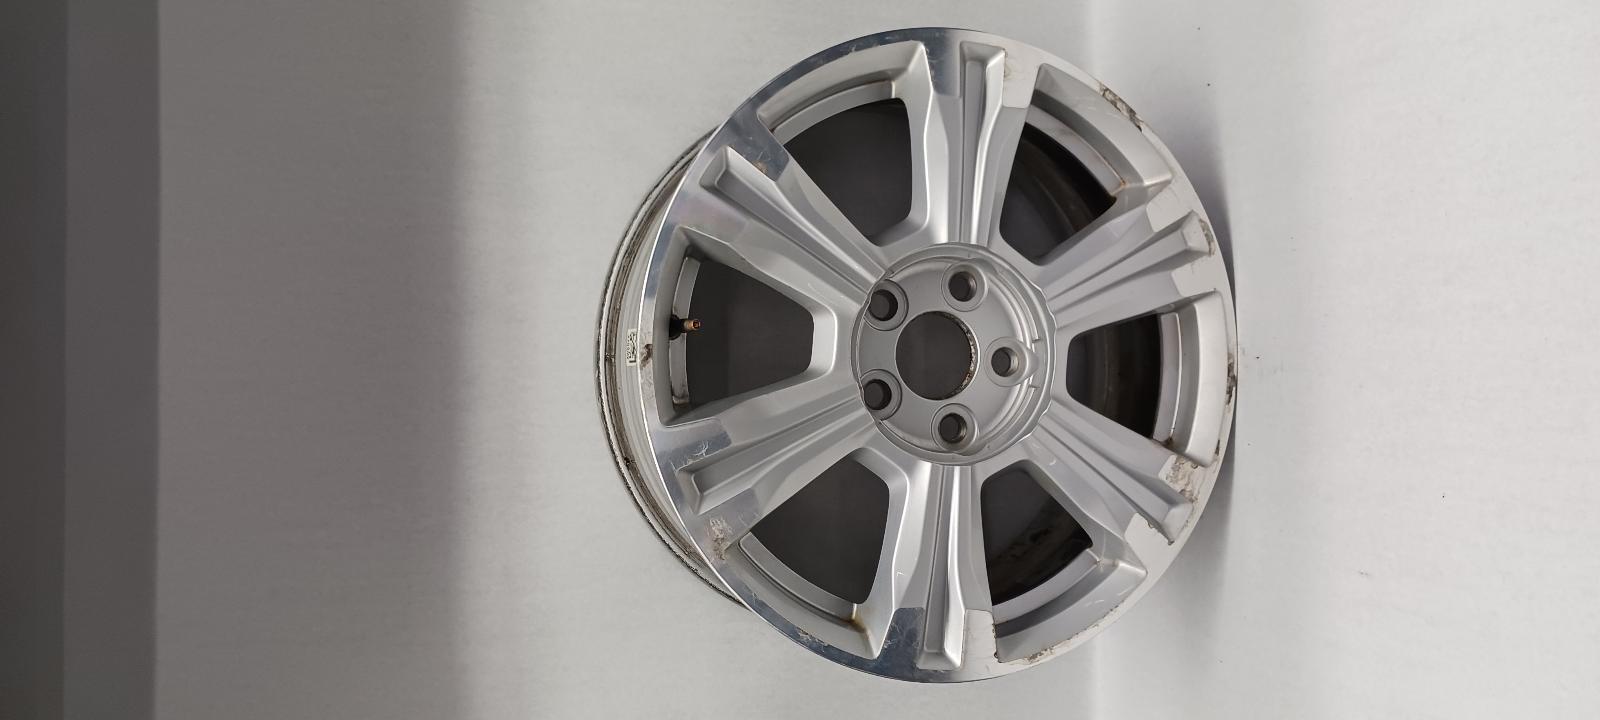 2017 GMC TERRAIN Wheel 18x7 6 spoke silver REY OEM 16 17